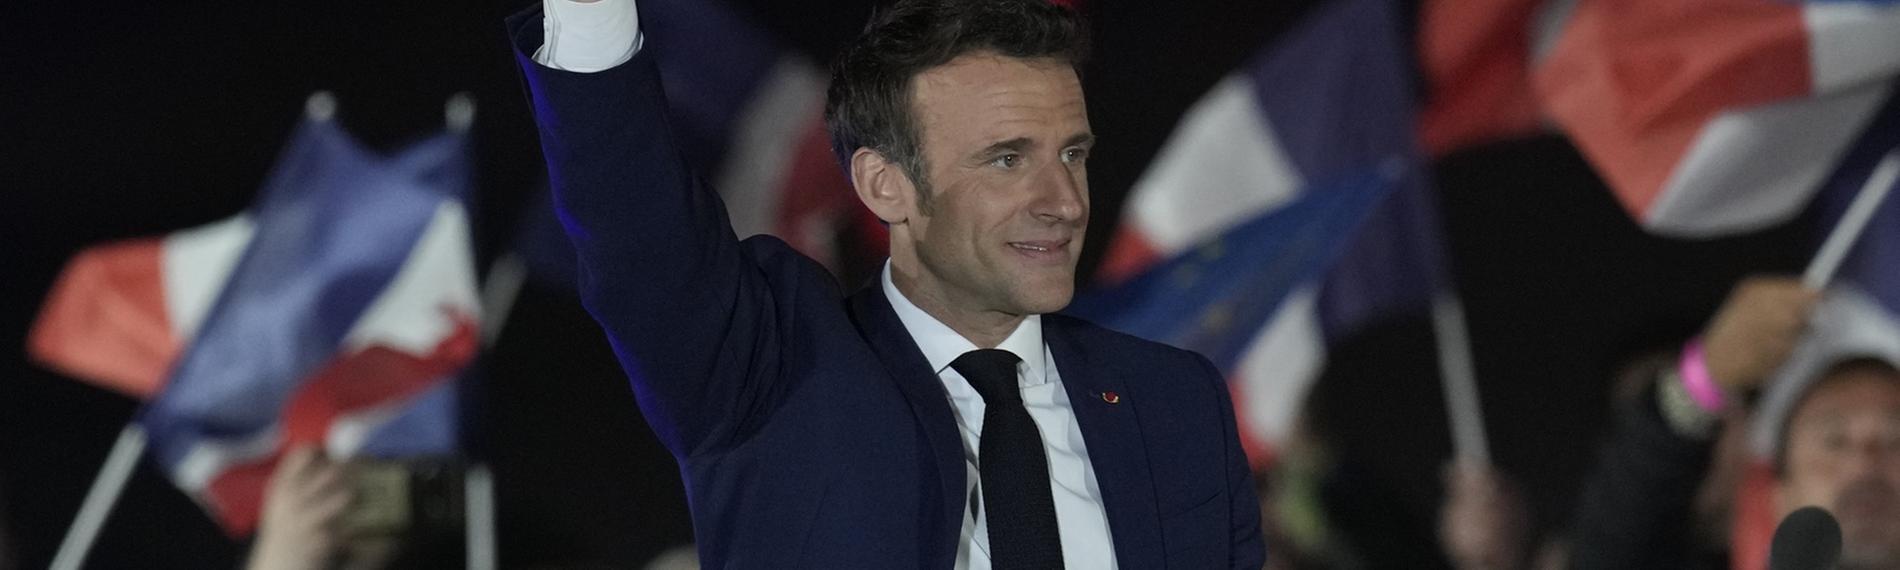 Rede Präsident Macron nach Wahlsieg